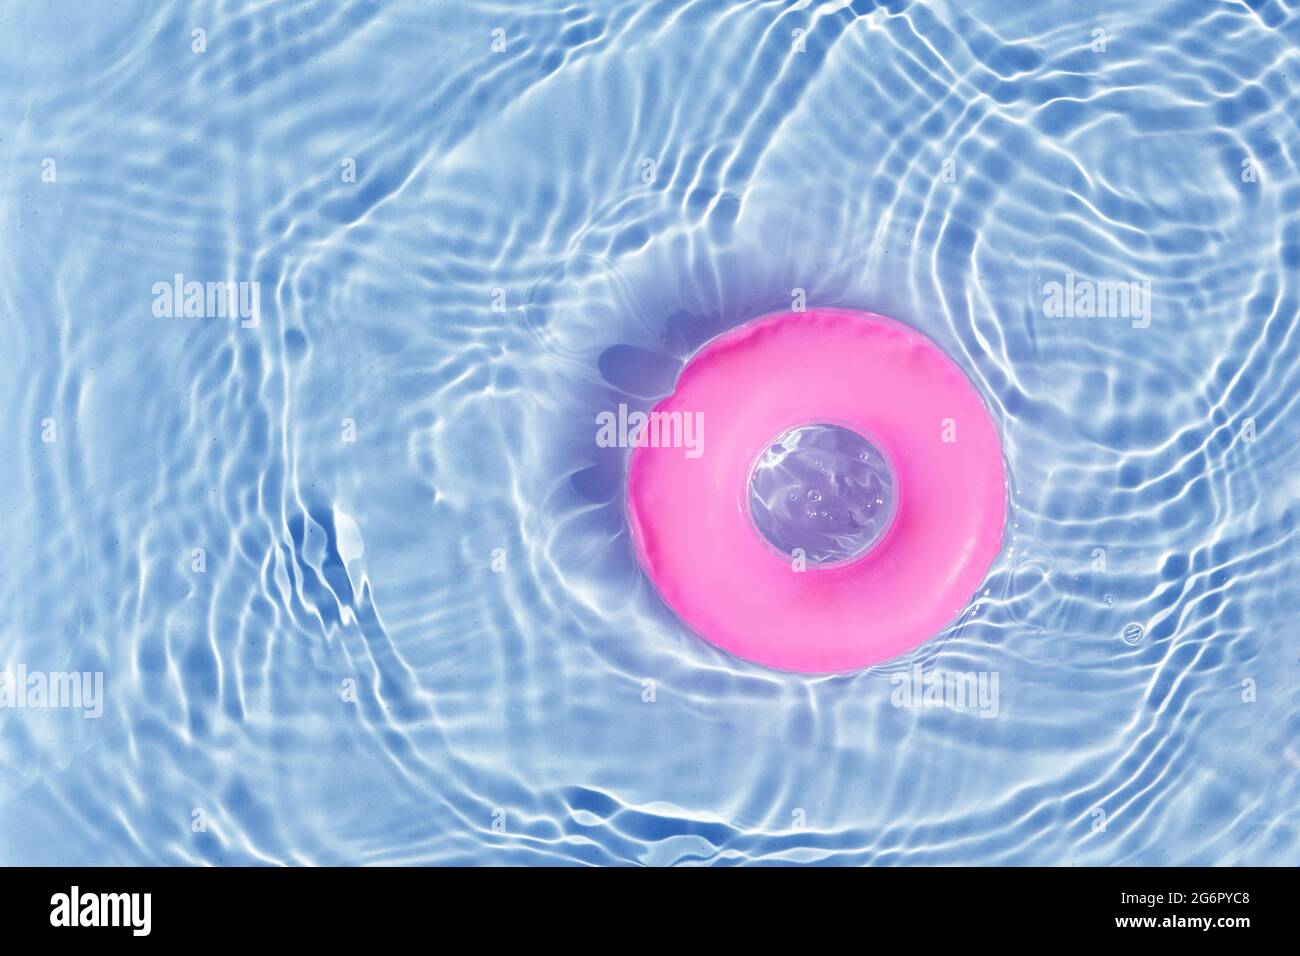 Pink Pool Float Ring schwimmt in einem erfrischenden blauen Pool. Draufsicht Stockfoto